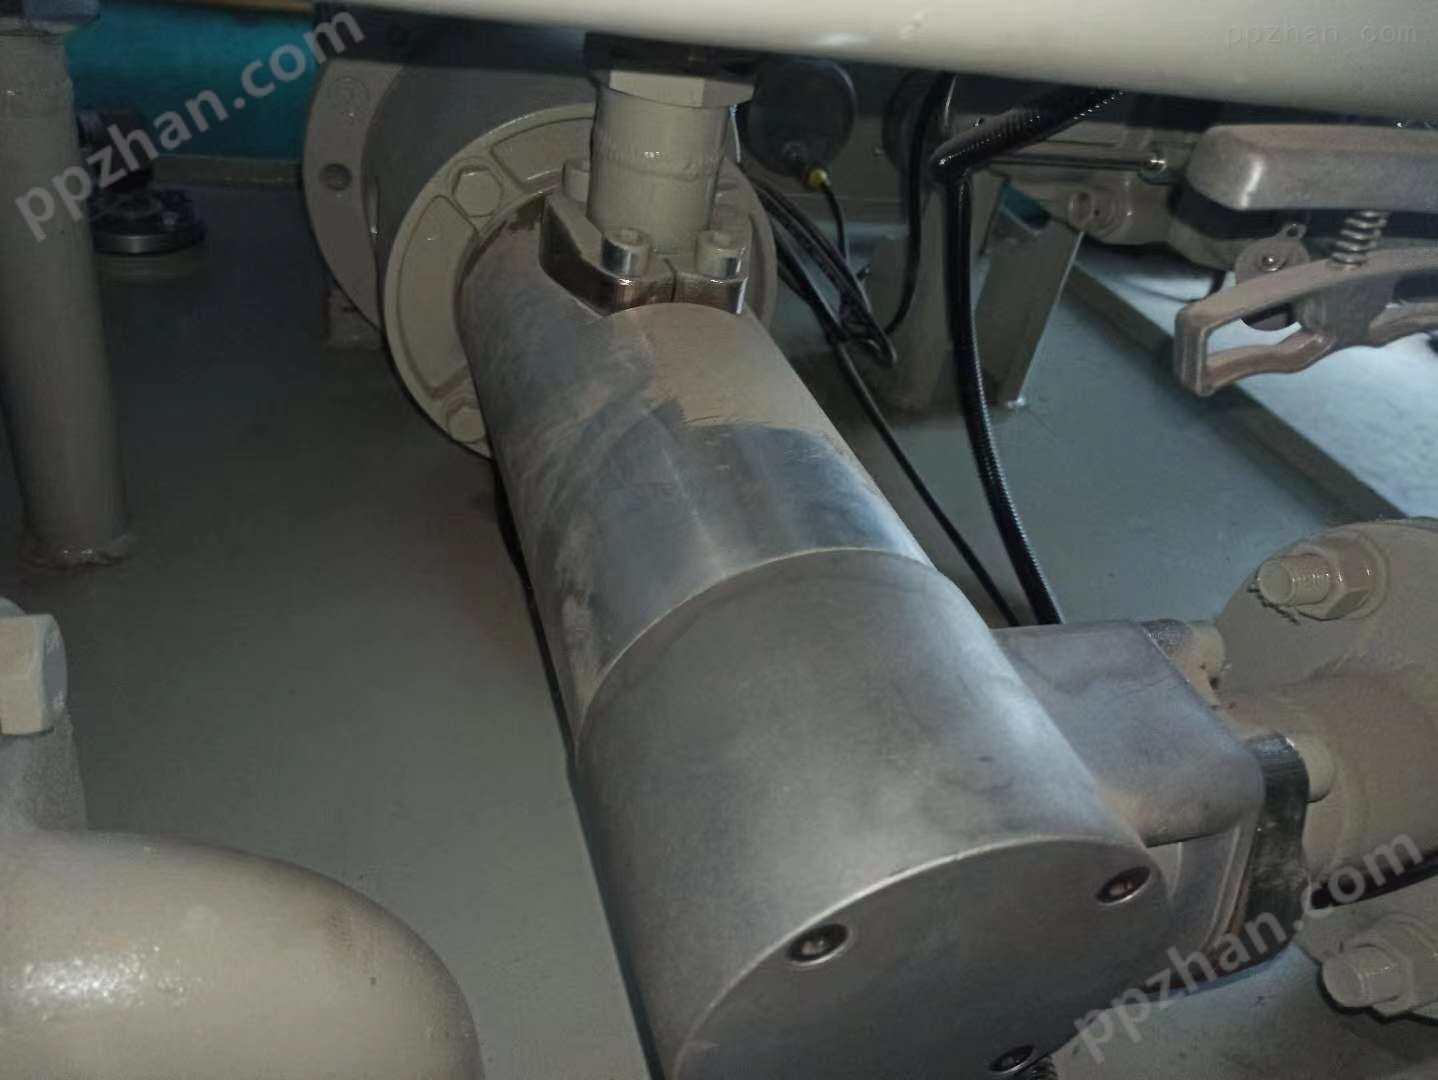 ZNYB01020802镀锌线液压低压油泵